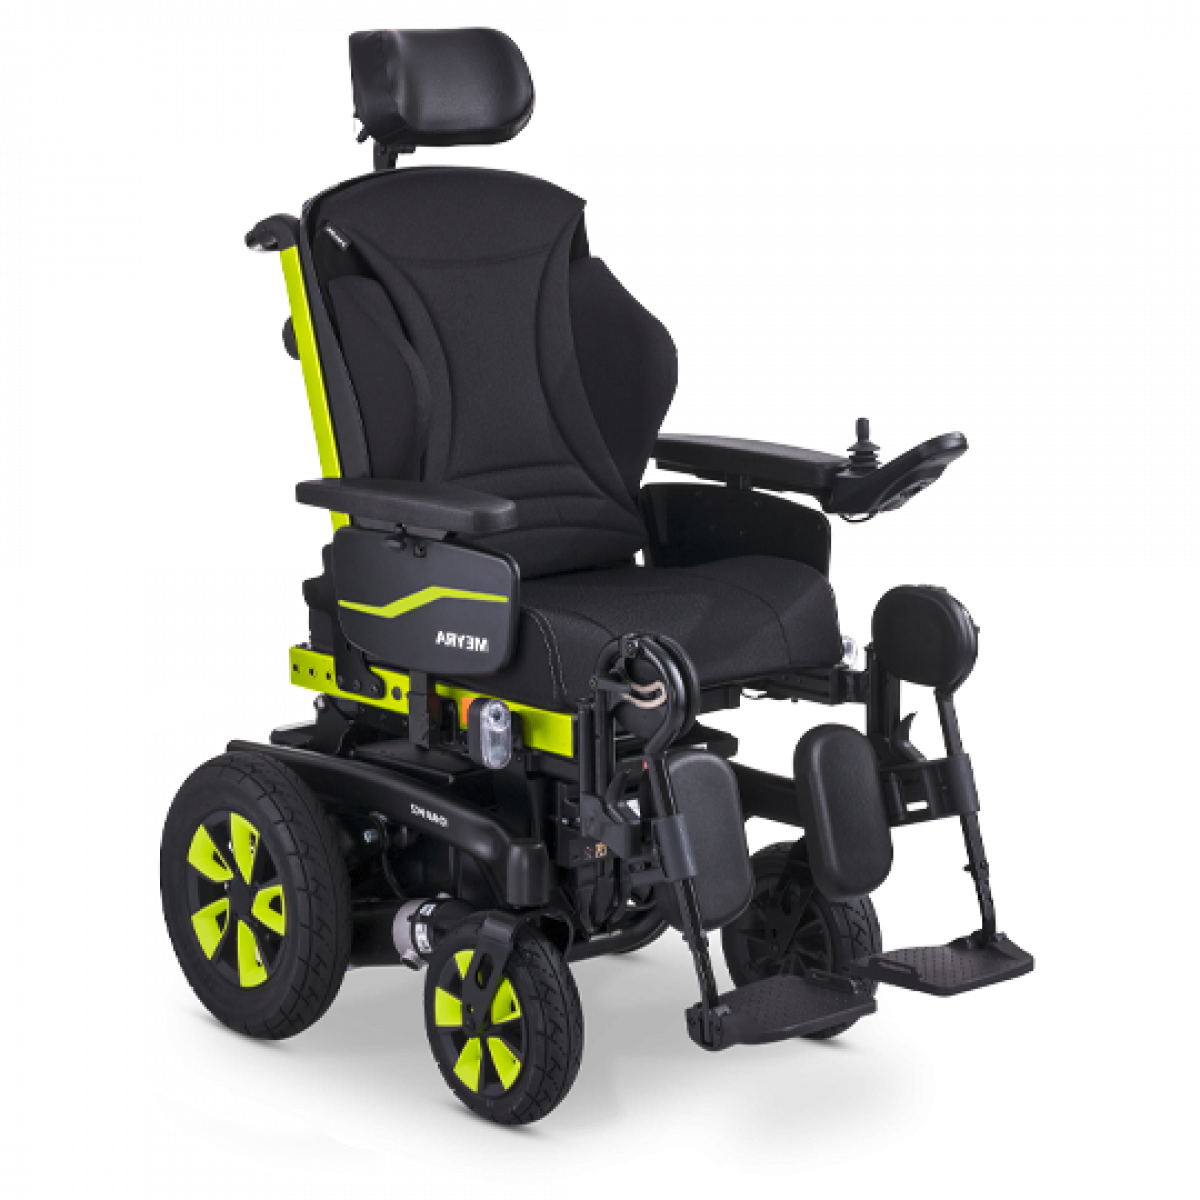 Кресло-коляска с электроприводом 1.611 ICHAIR mc2. Meyra Ortopedia инвалидная коляска. Meyra mc2 коляска. Инвалидная коляска с электроприводом Meyra ICHAIR mc3 1.612. Электронные коляски купить